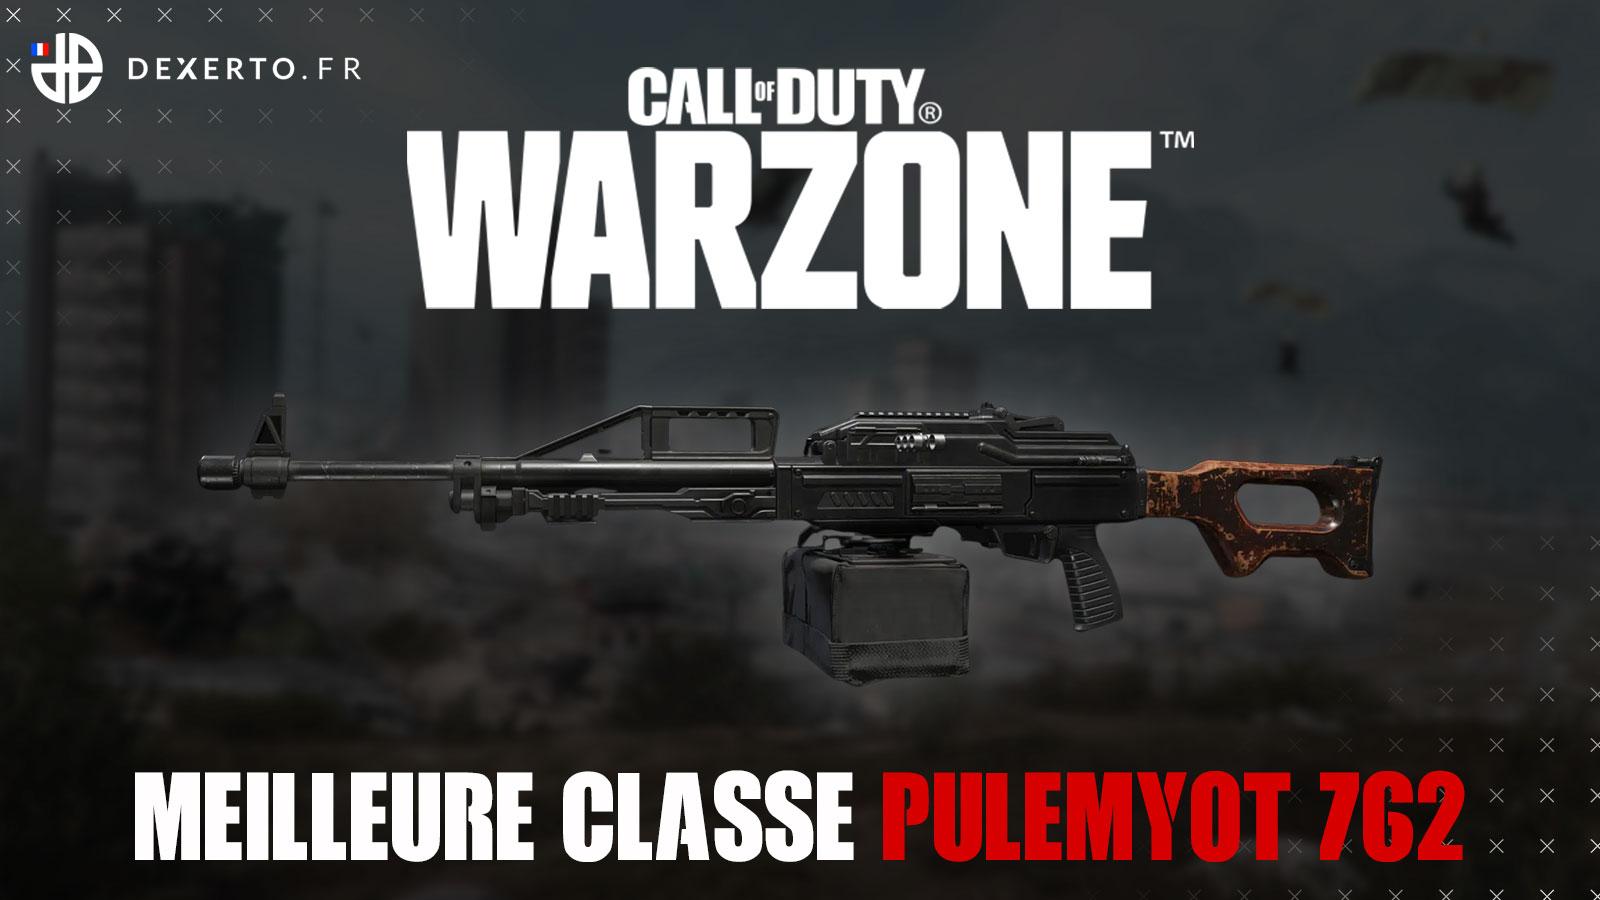 Warzone Pulemyot 762 classe